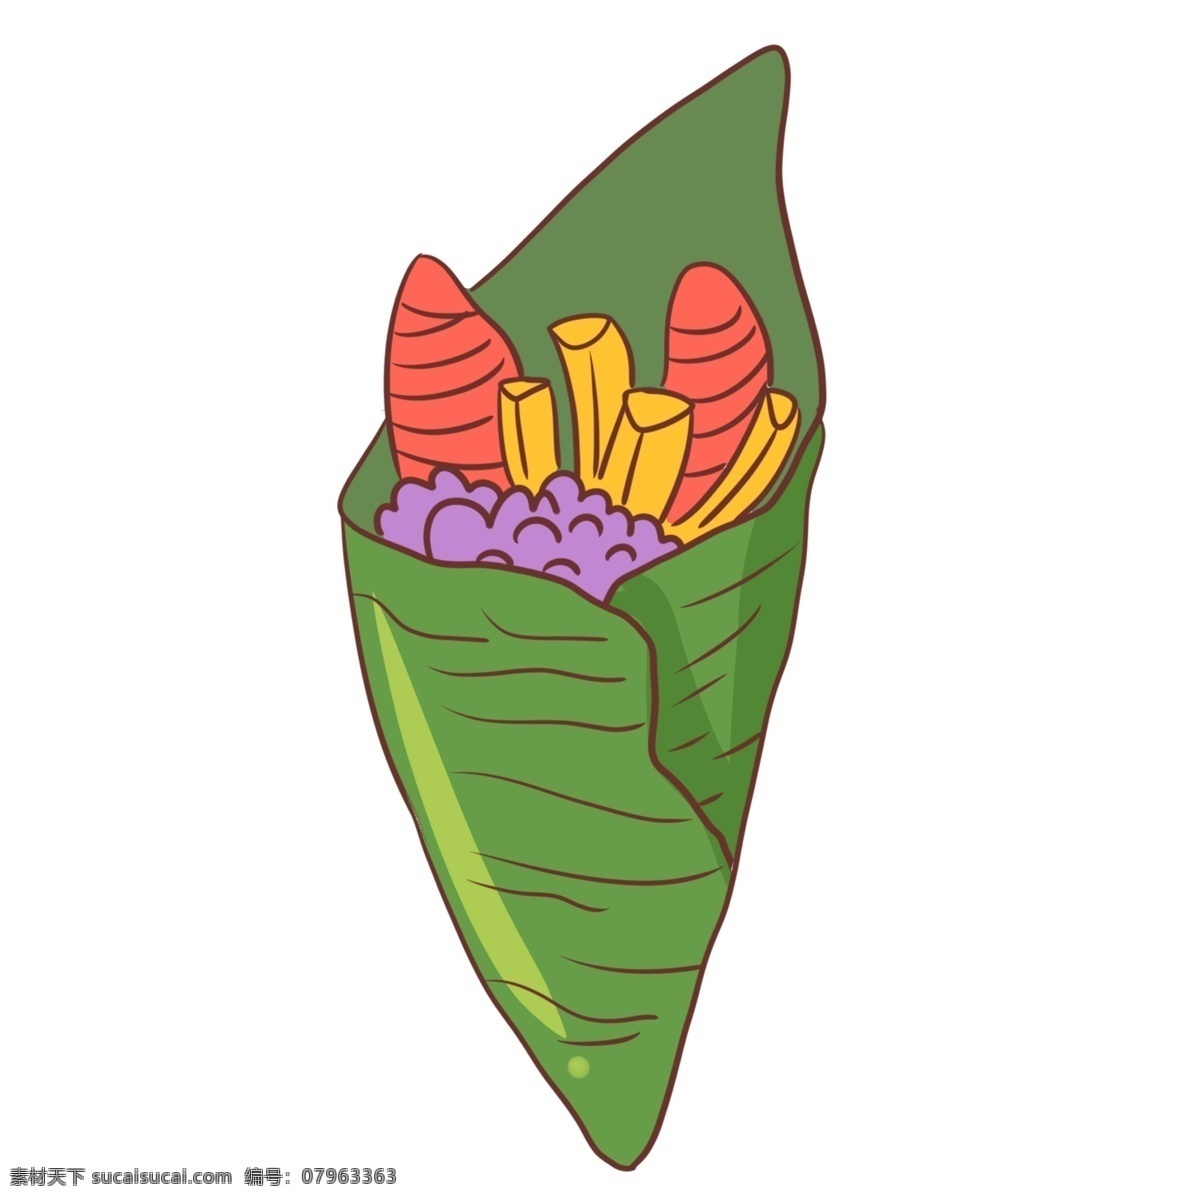 特色 小吃 寿司 卷 插画 寿司卷 食物 日本美食 糯米 特色小吃 寿司卷插画 日本料理 日式美食插图